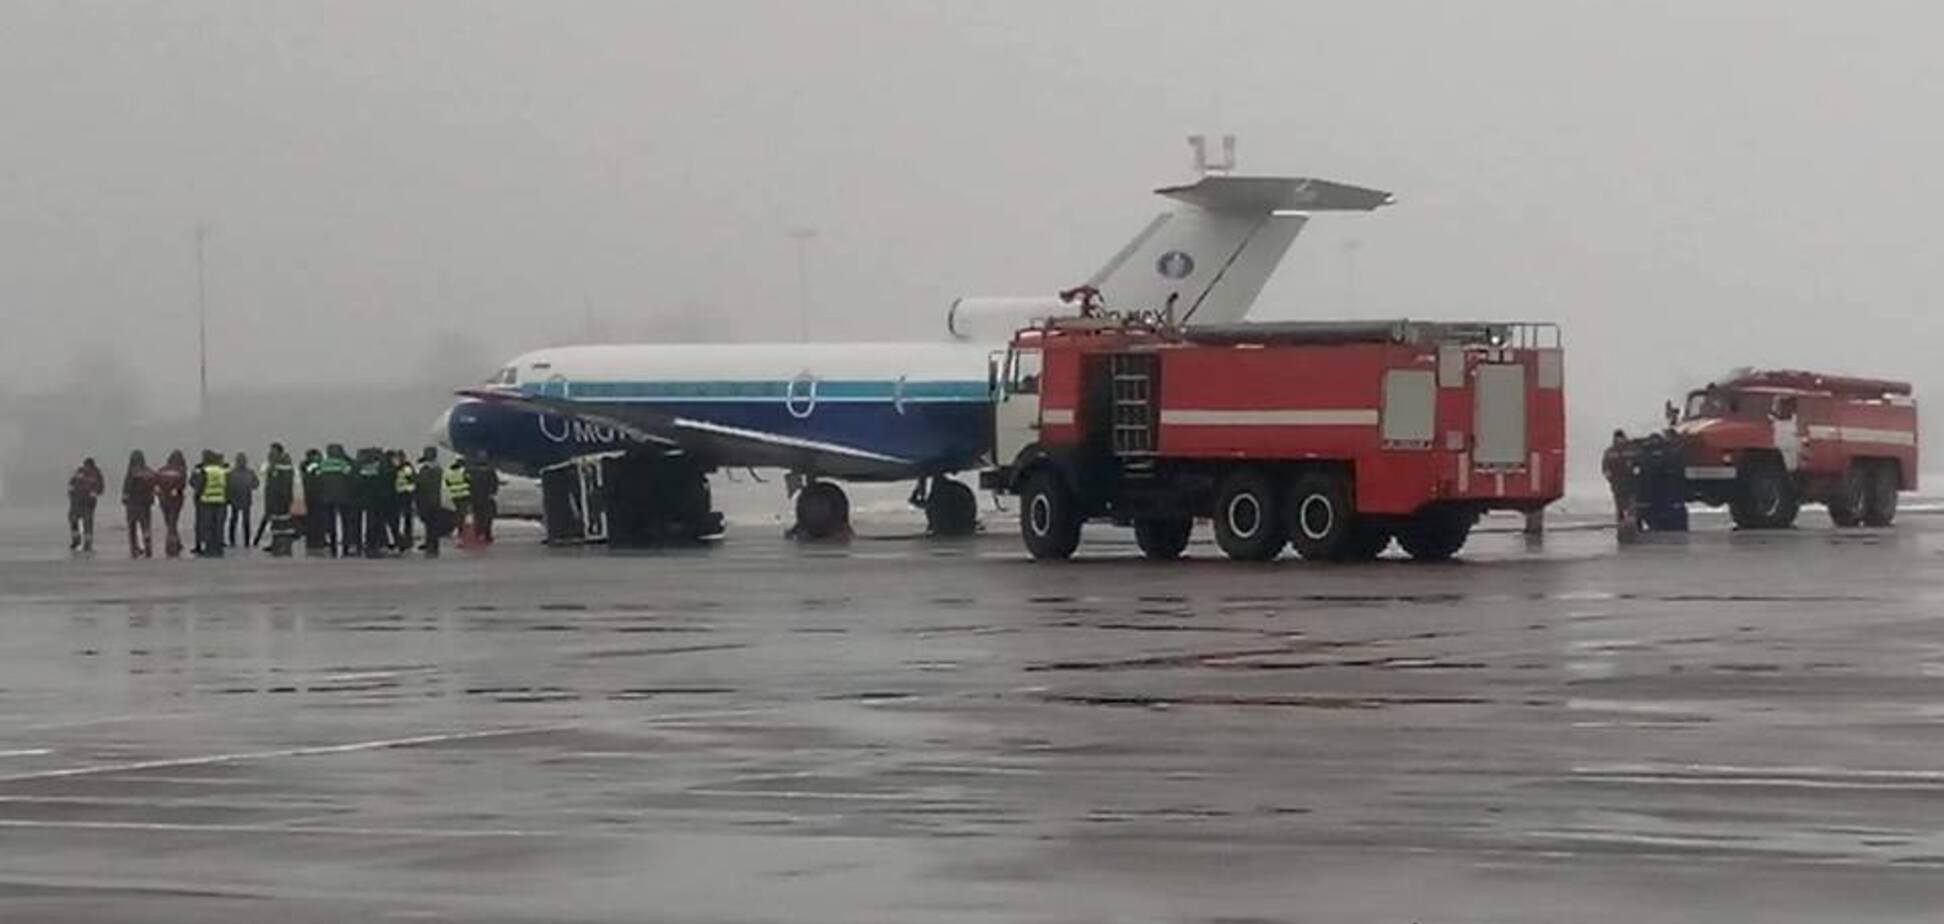 В аэропорту Киев произошло ЧП с самолетом: подробности инцидента